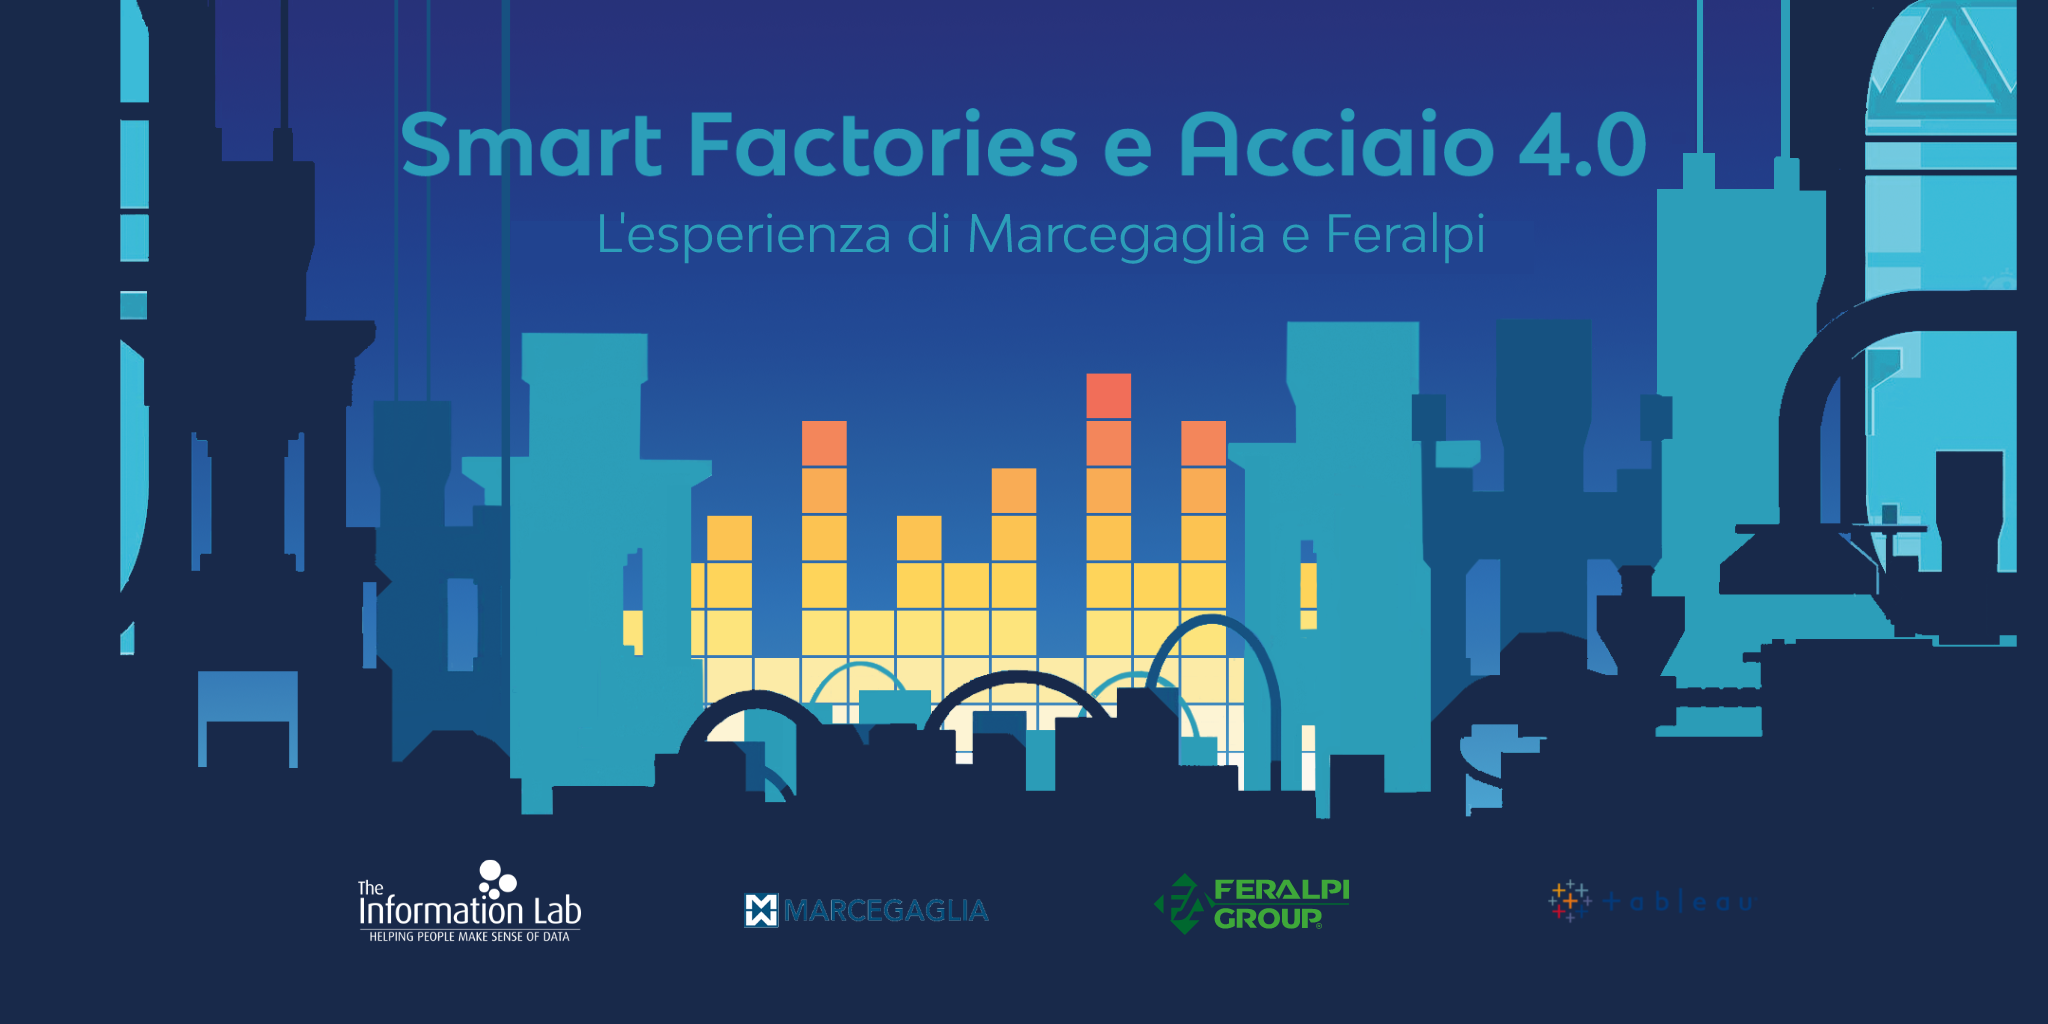 Smart Factories e Acciaio 4.0 | L’esperienza di Marcegaglia e Feralpi